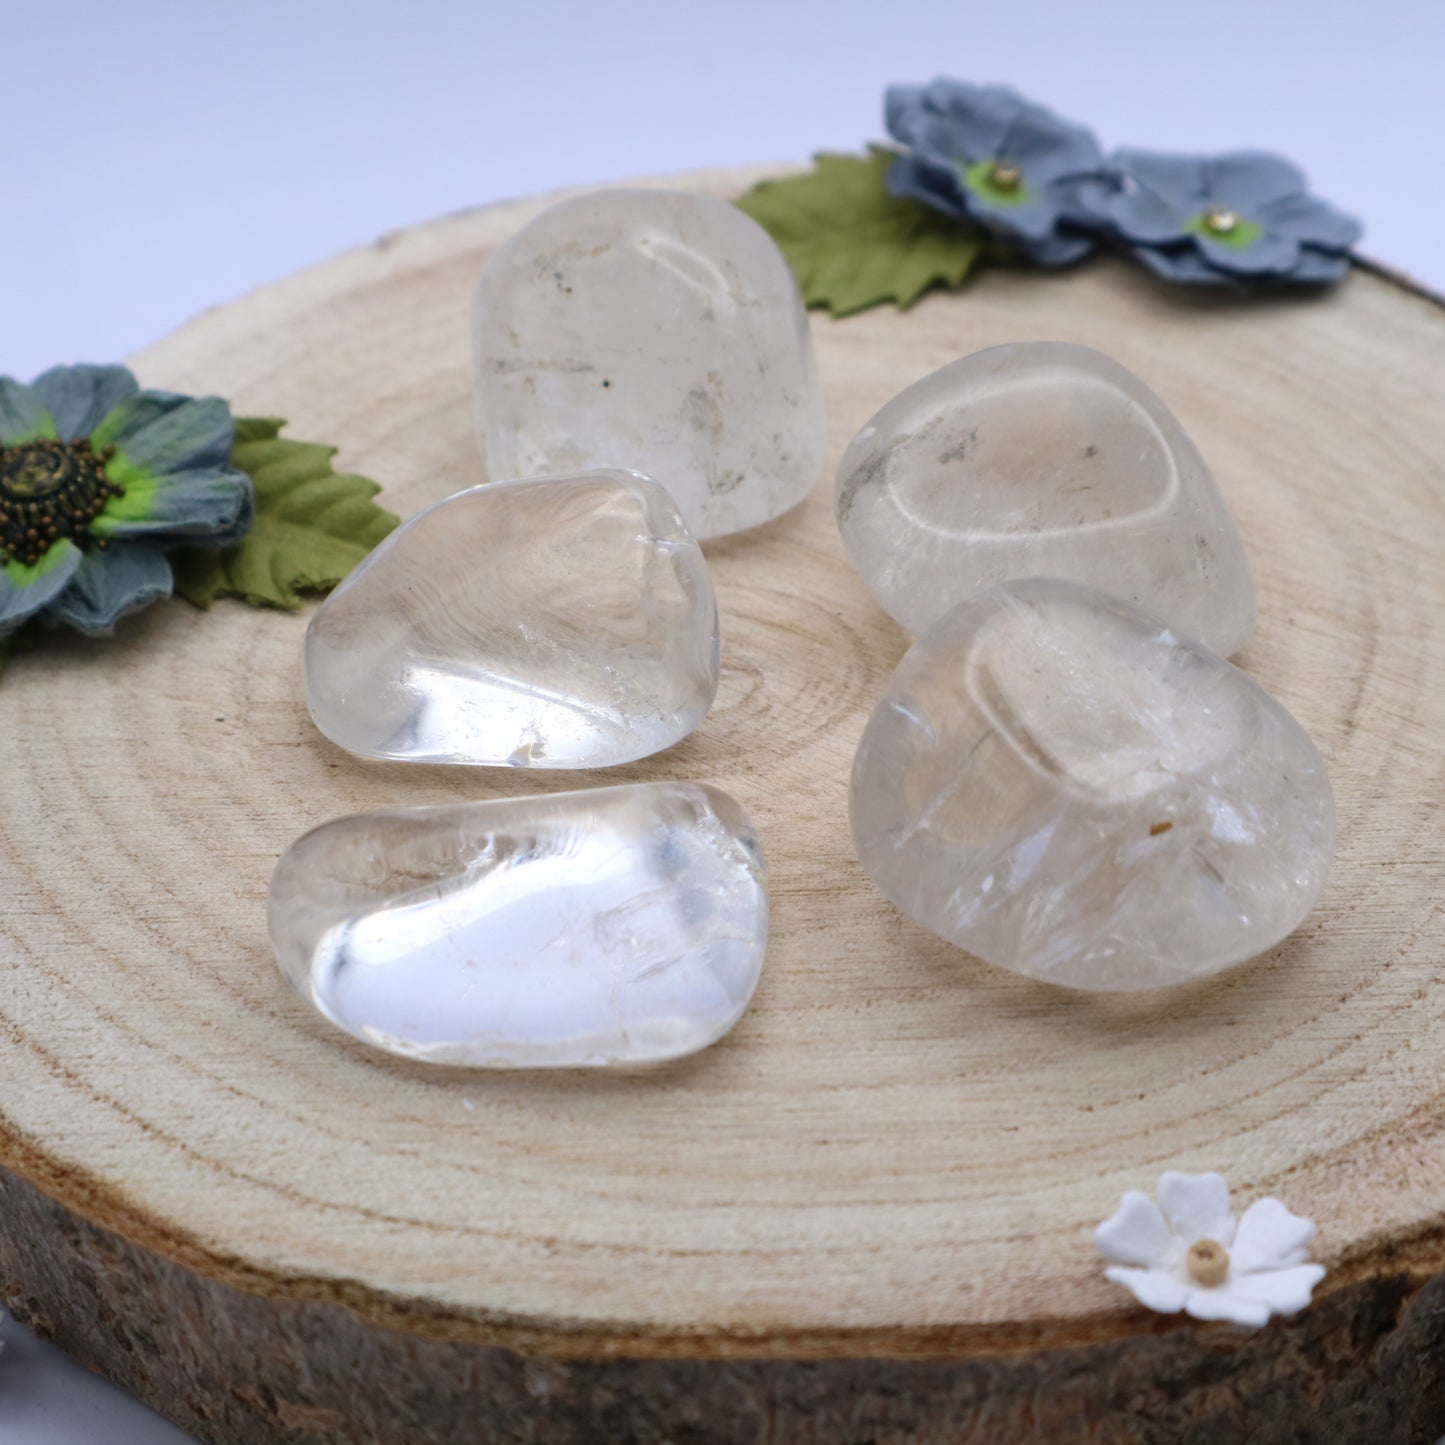 Five pieces of Rock Crystal crystals